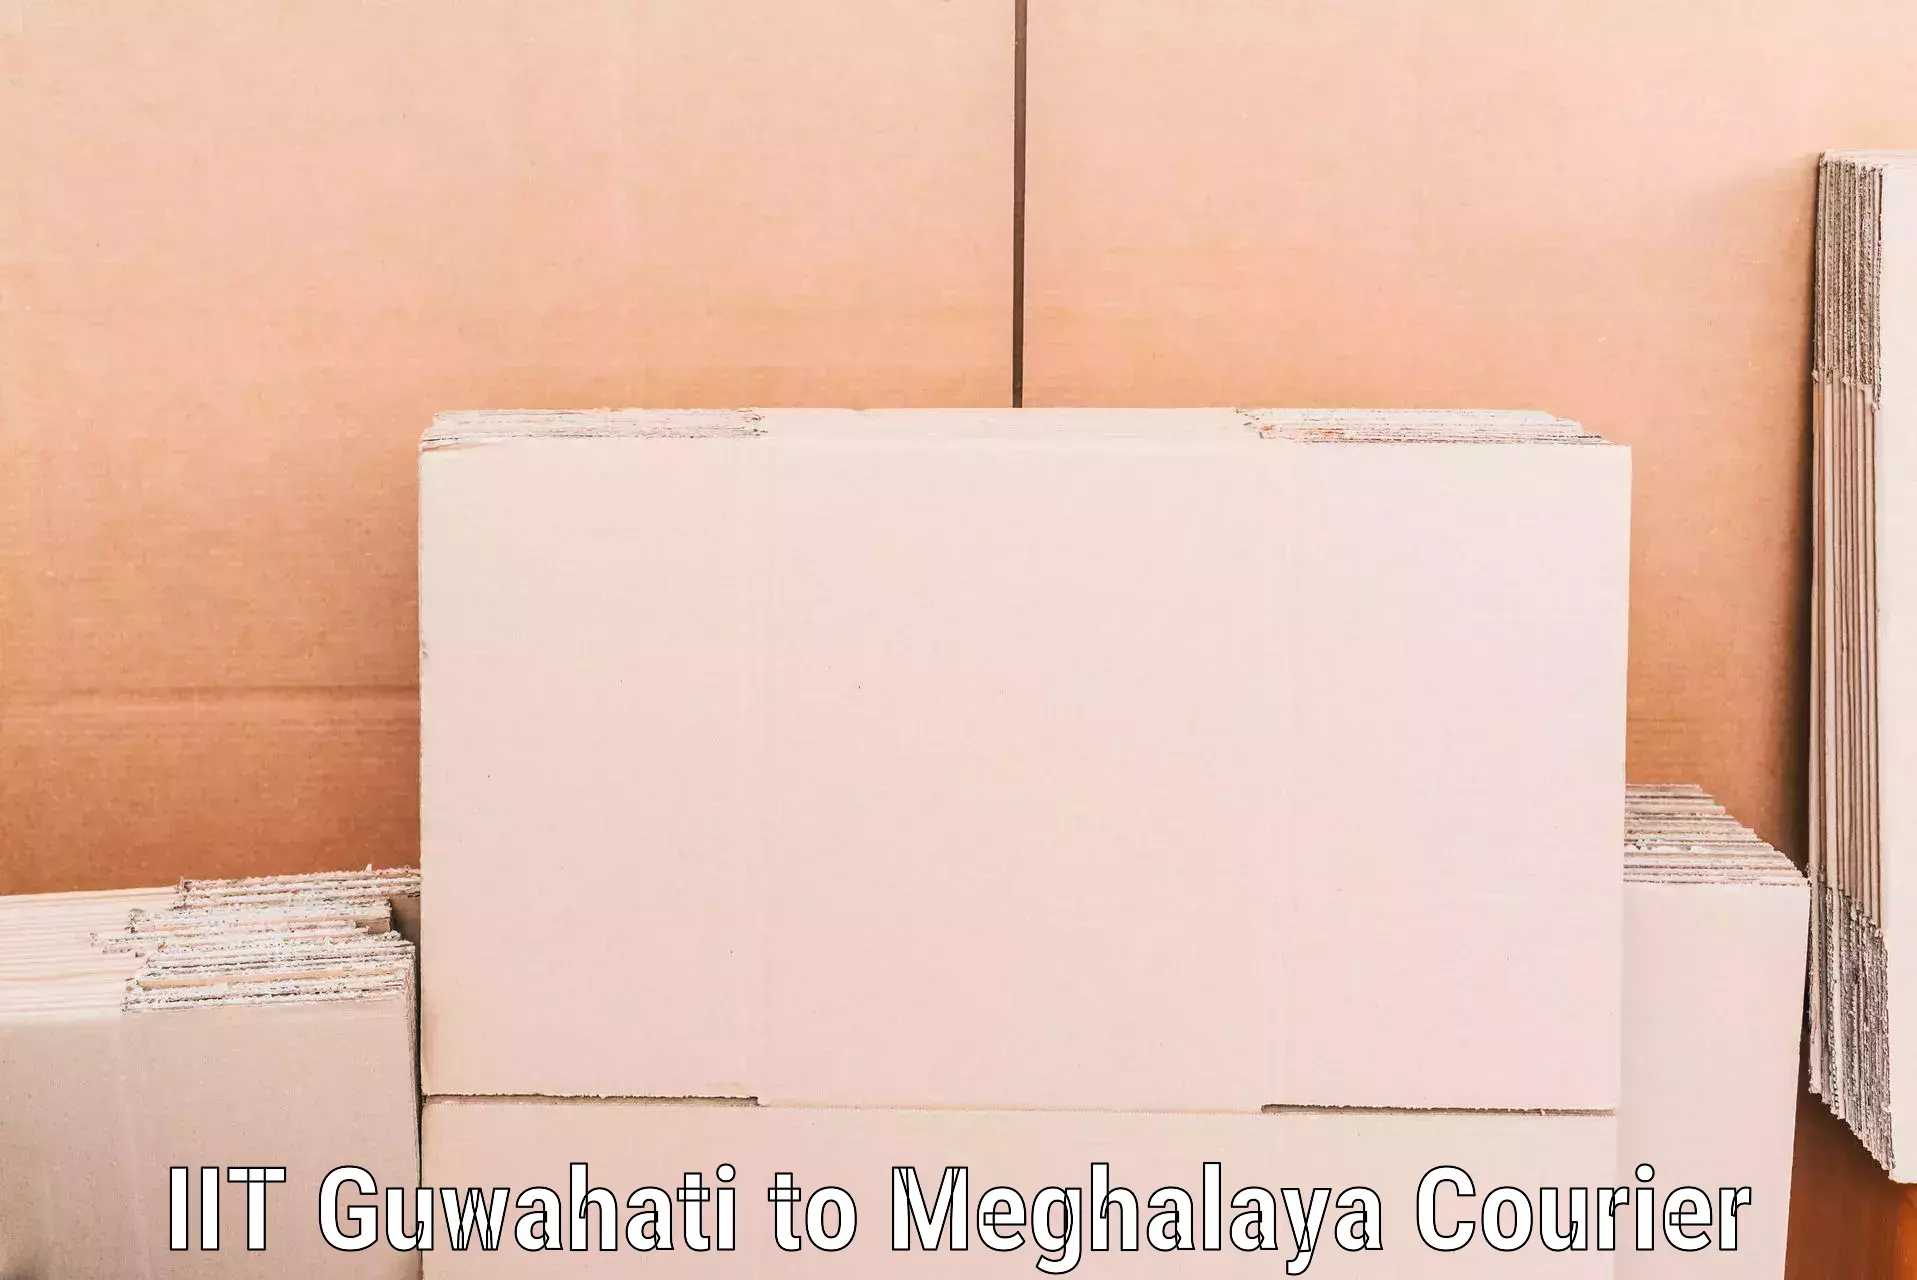 Door-to-door relocation services in IIT Guwahati to Meghalaya